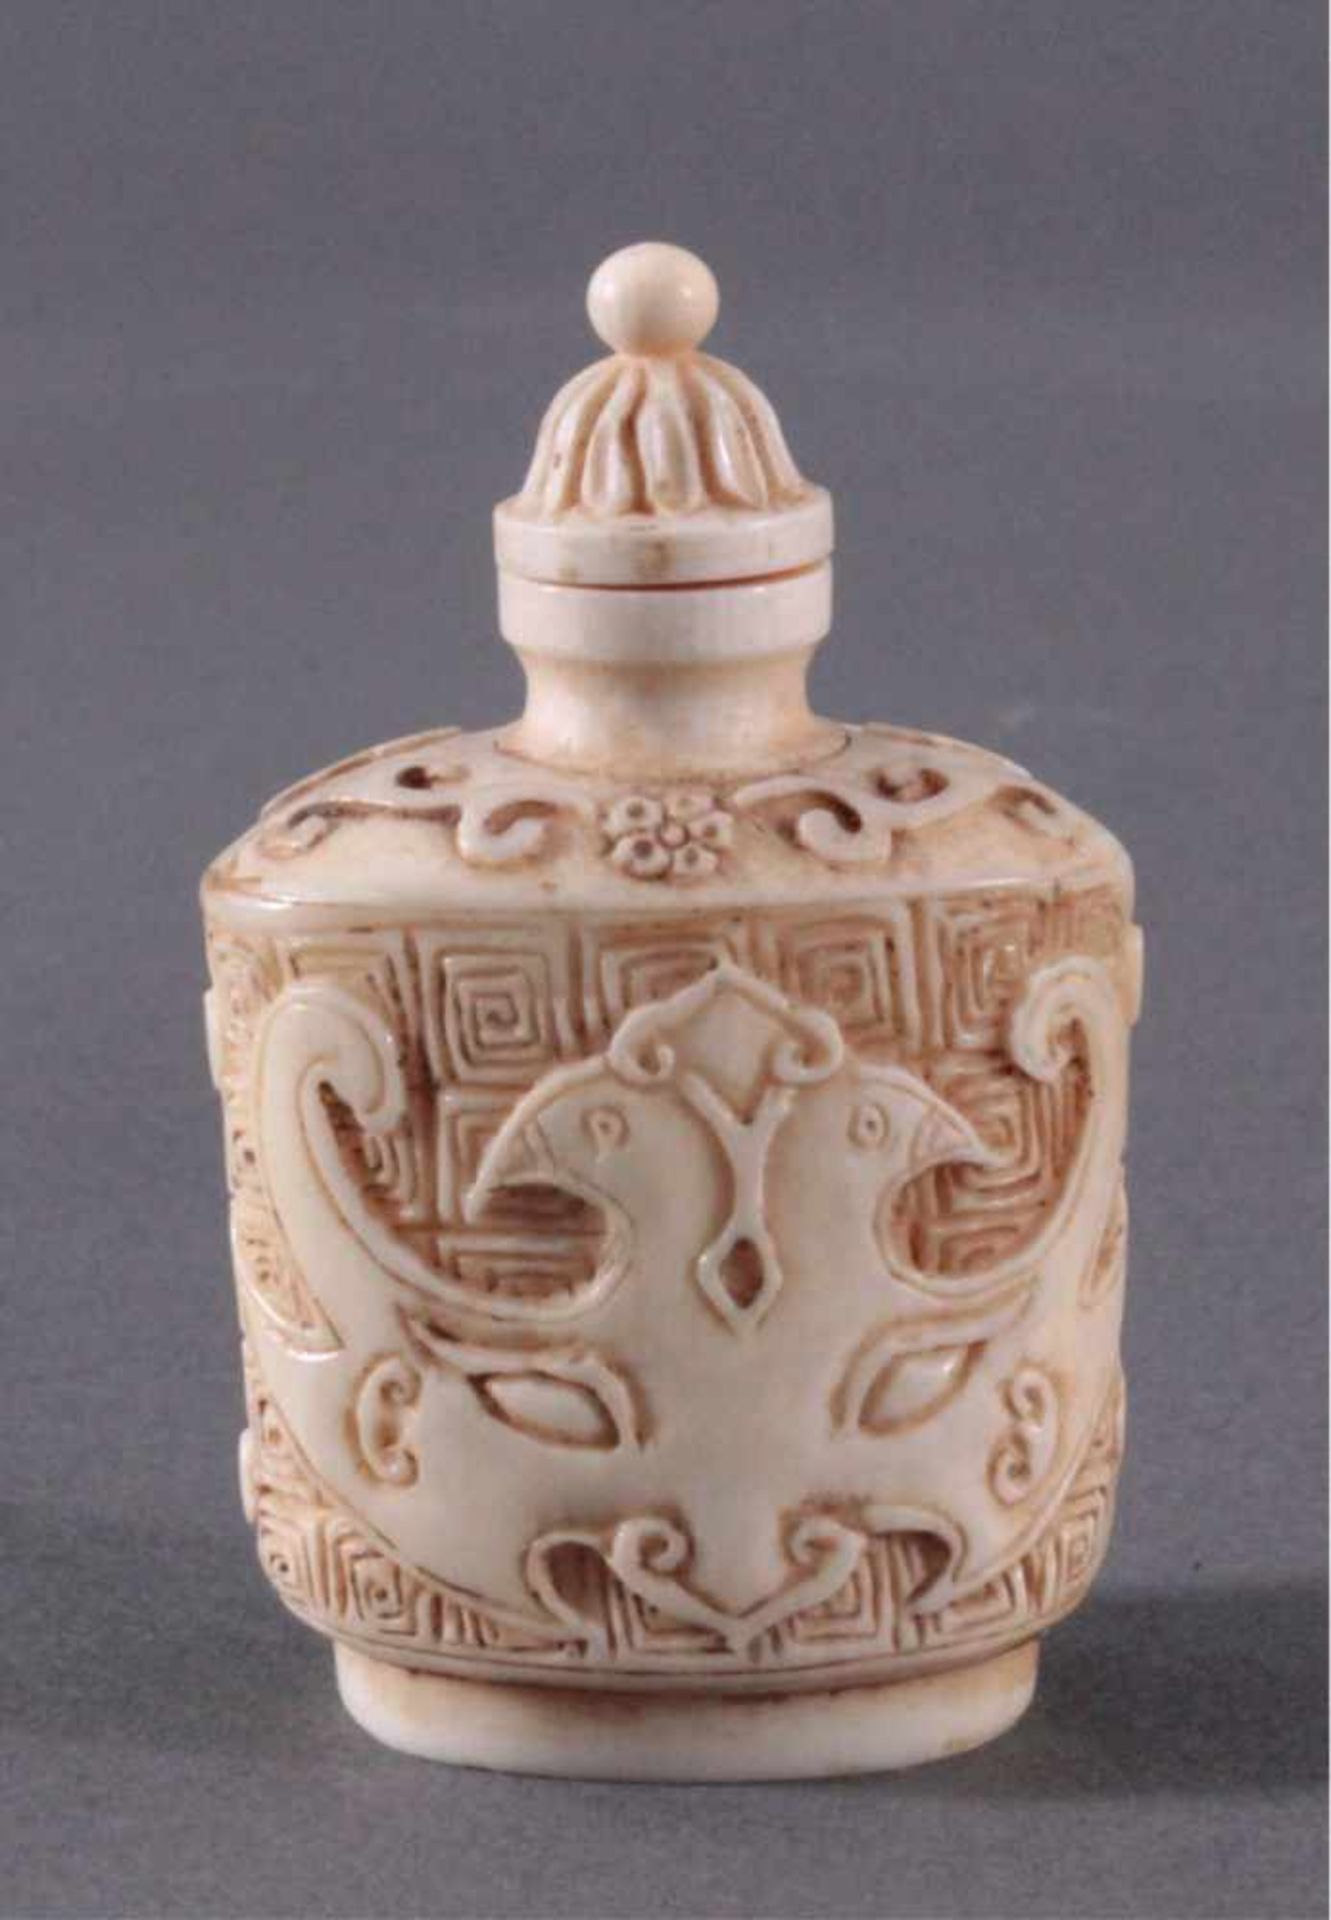 Snuff Bottle aus Elfenbein, China um 1900Umlaufend feine Schnitzarbeit von Ornamenten,ca. Höhe 6,5